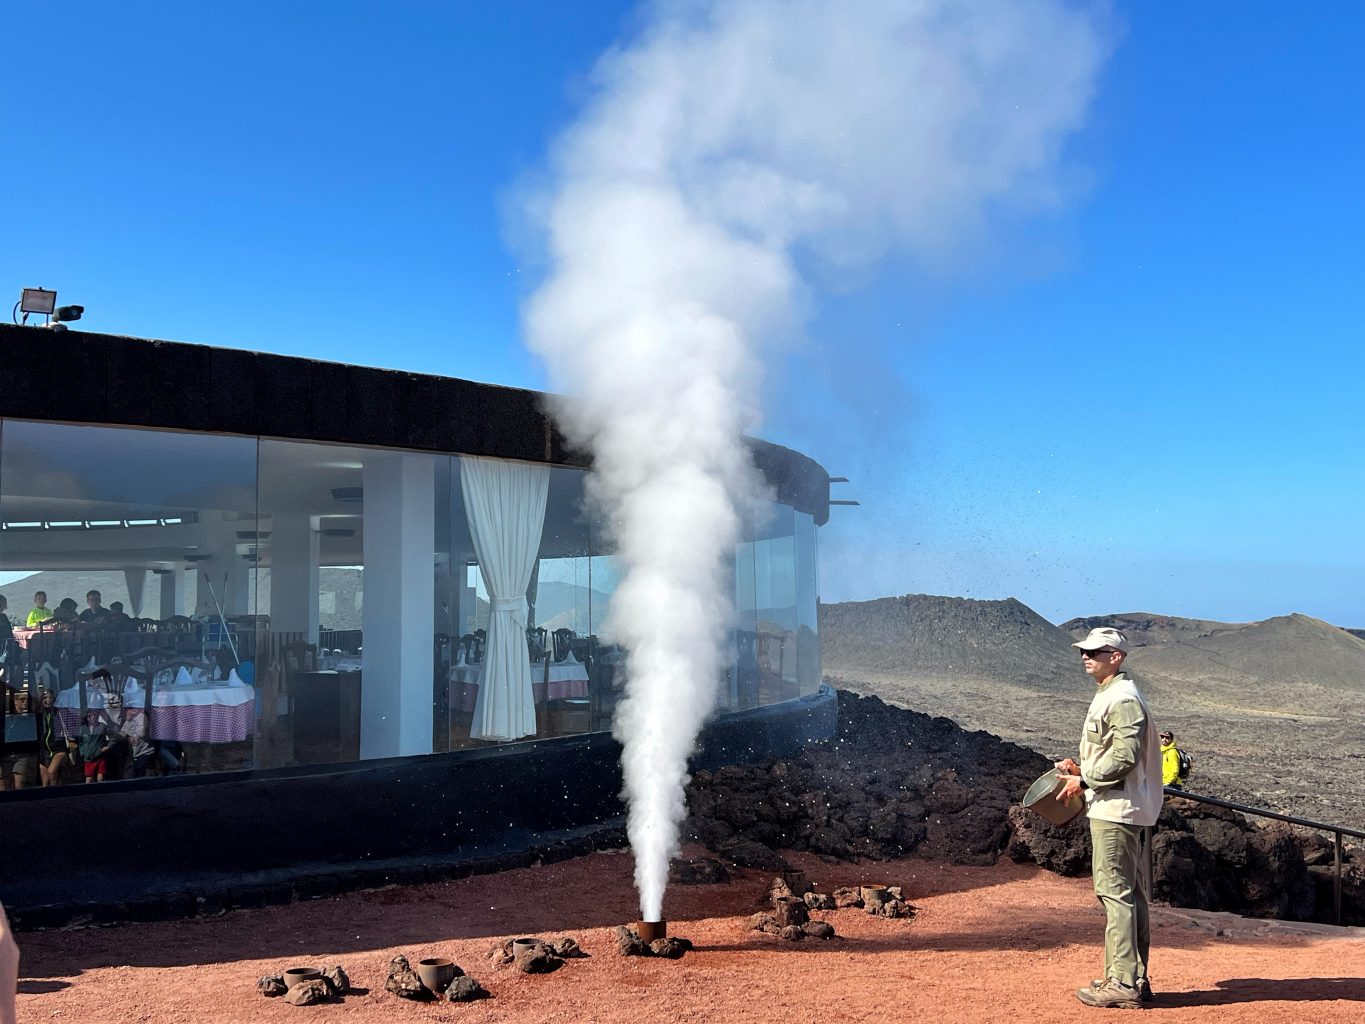 Demostración geotérmica. Cómo visitar el Parque Nacional de Timanfaya